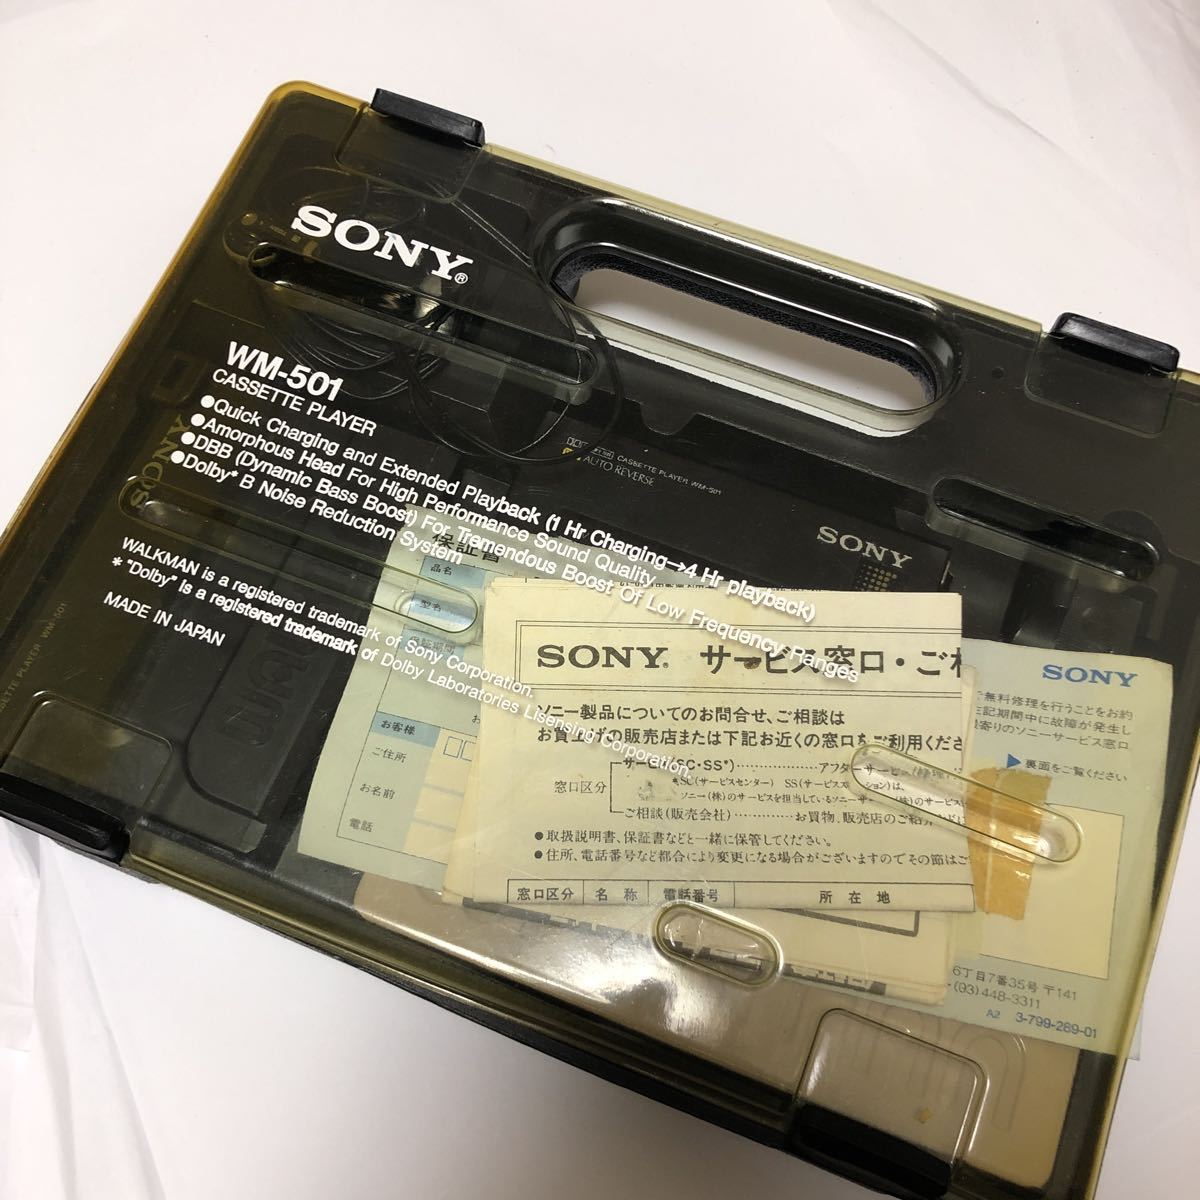 ジャンク】SONY WM-501 walkman ソニー カセットプレーヤー